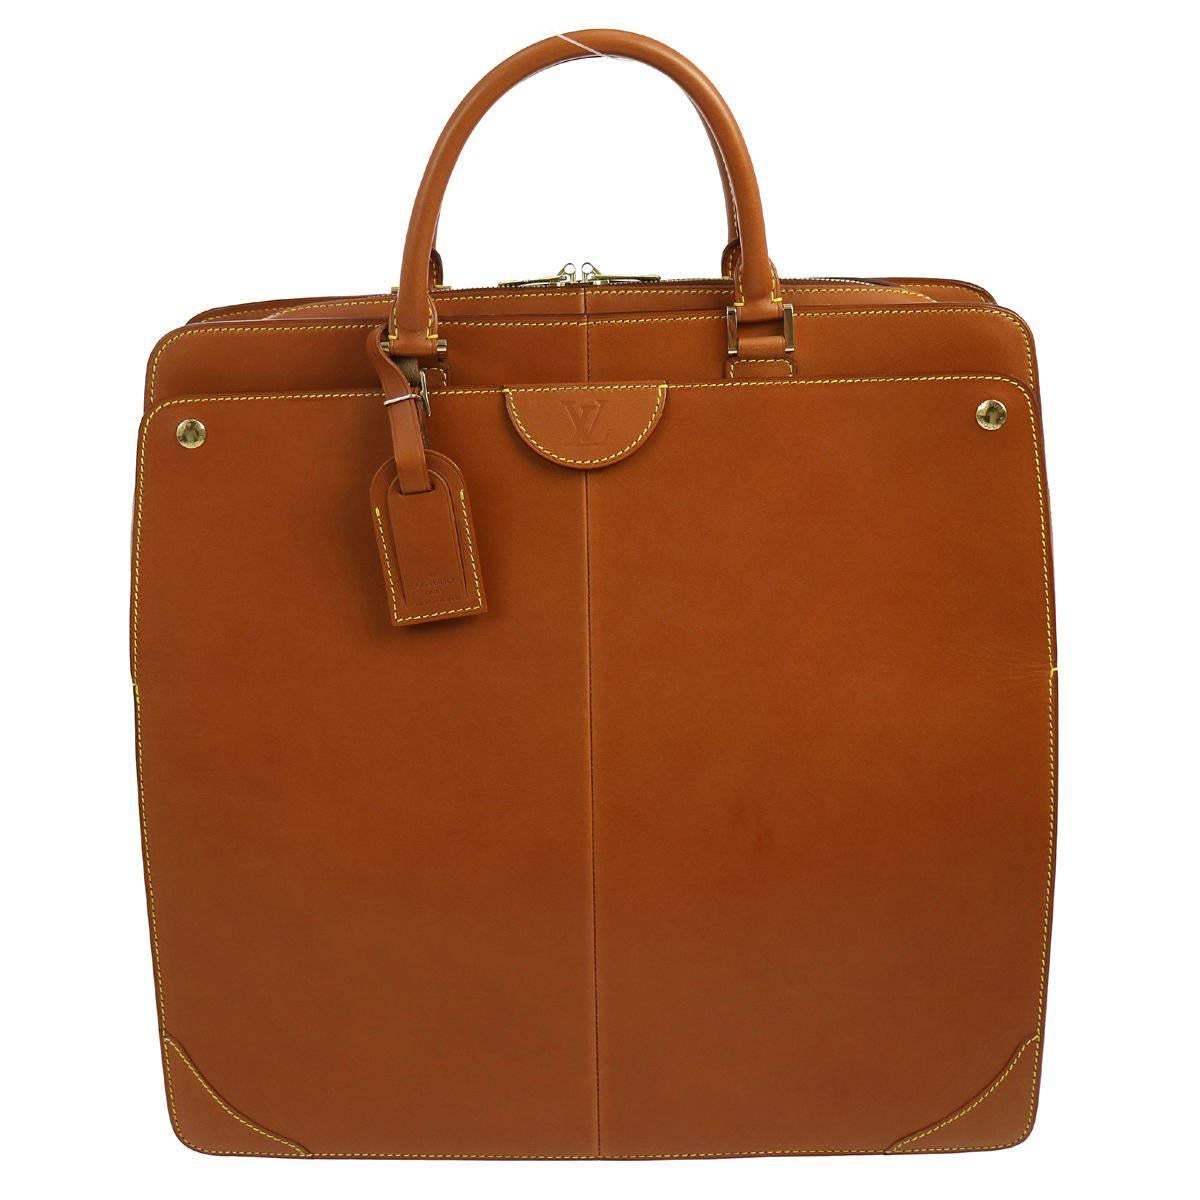 Louis Vuitton Cognac Leather Carryall Men's Women's Travel Top Handle Tote Bag